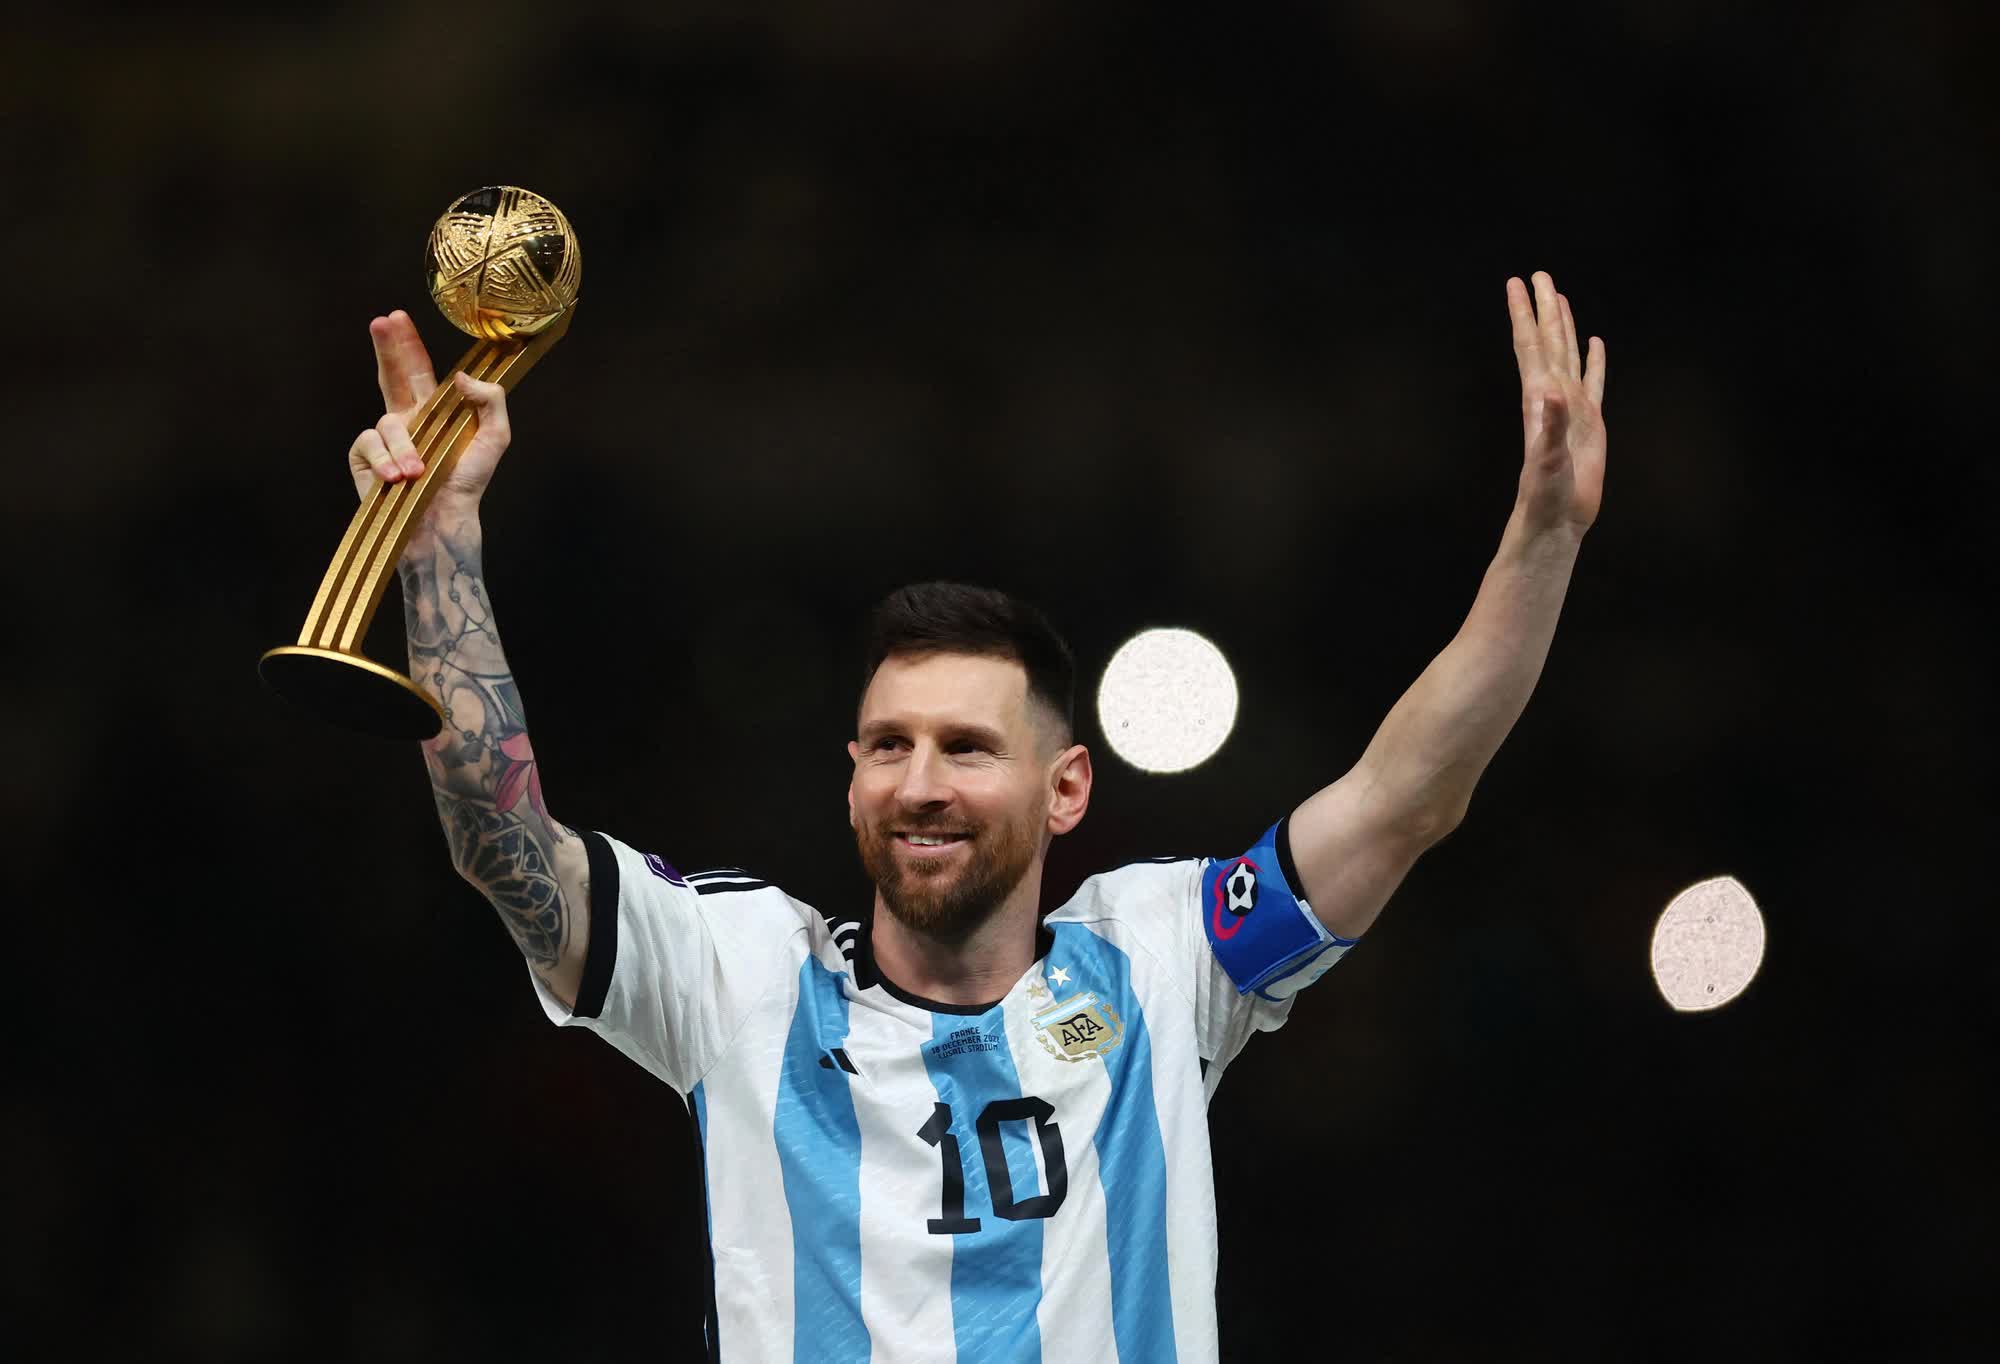 Chàng cầu thủ vĩ đại Lionel Messi có lý do để được gọi là huyền thoại của bóng đá thế giới! Hãy xem hình ảnh của anh để nhận ra tầm quan trọng của Messi trong lịch sử bóng đá!